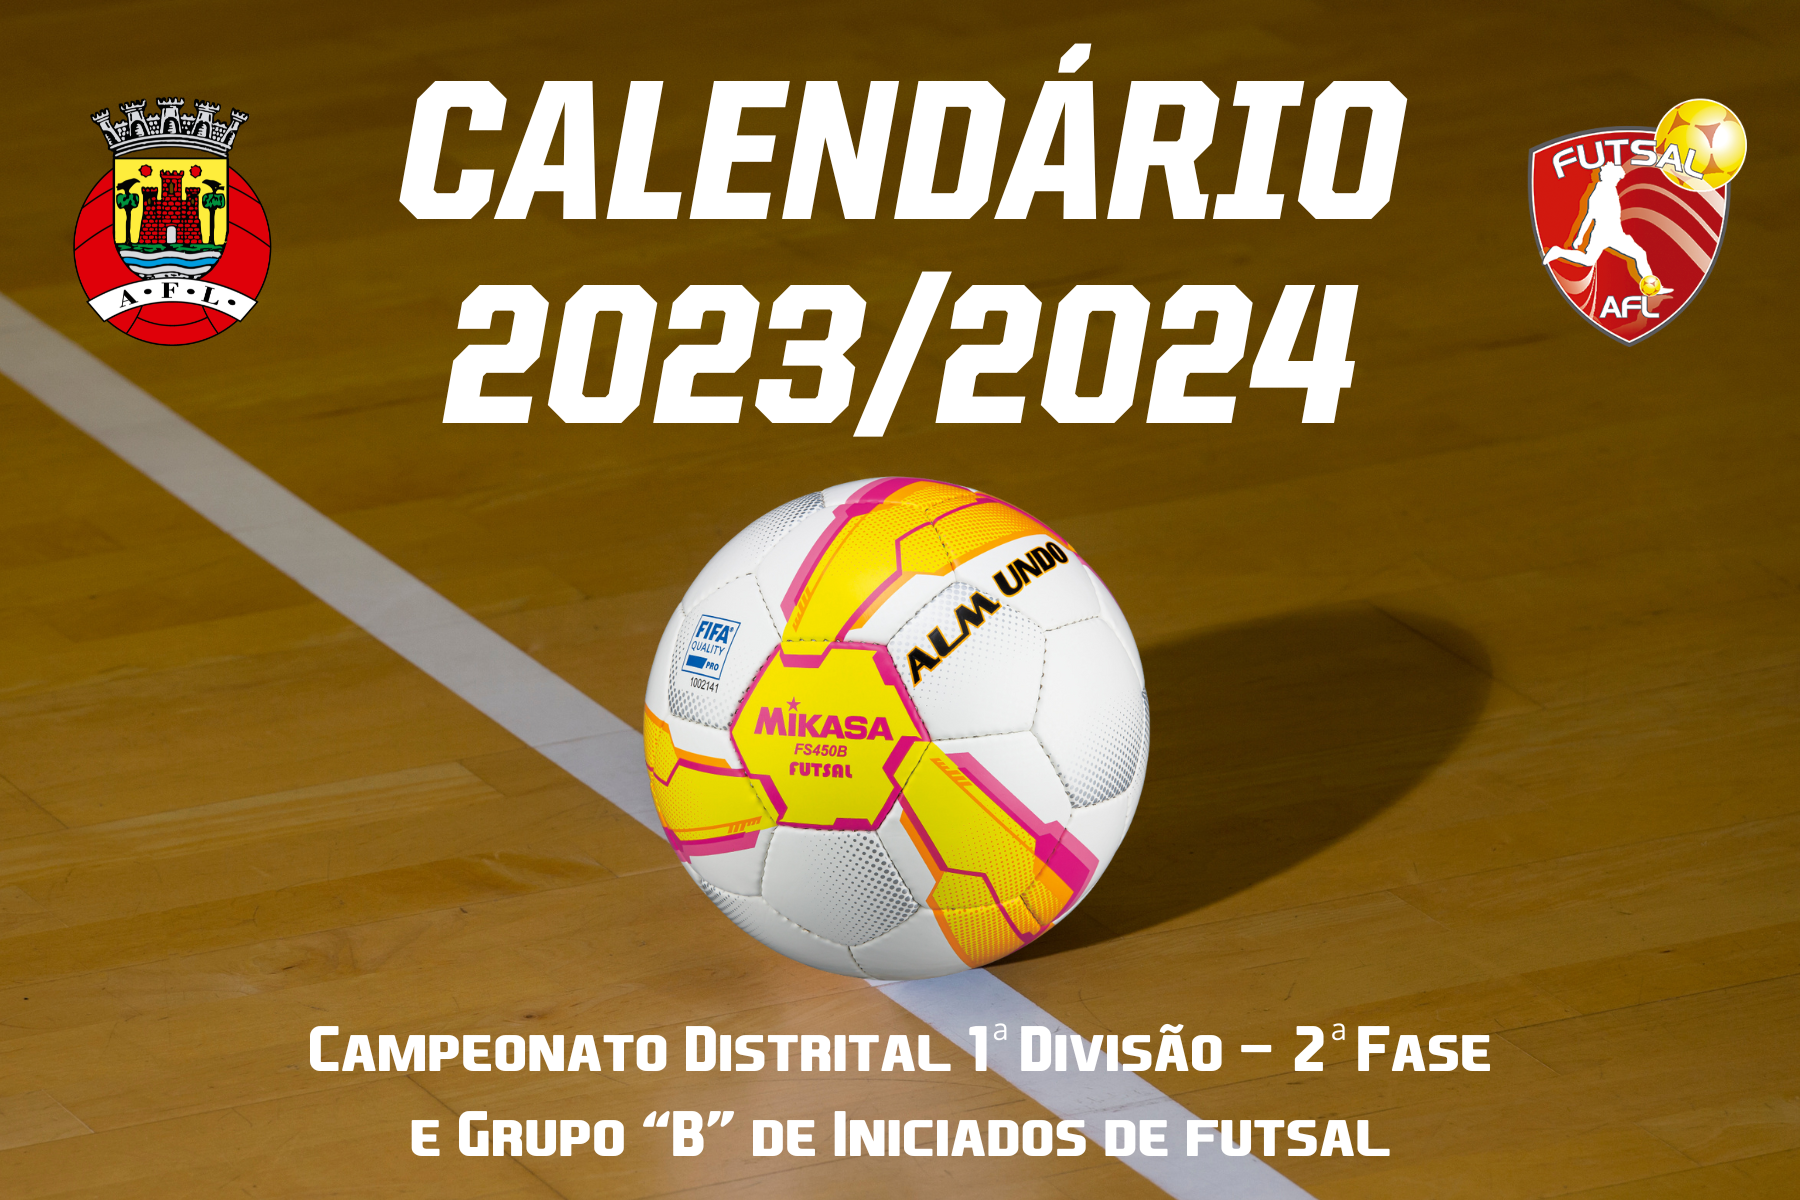 Calendários do Campeonato Distrital 1ª Divisão - 2ª Fase e Grupo B conhecidos